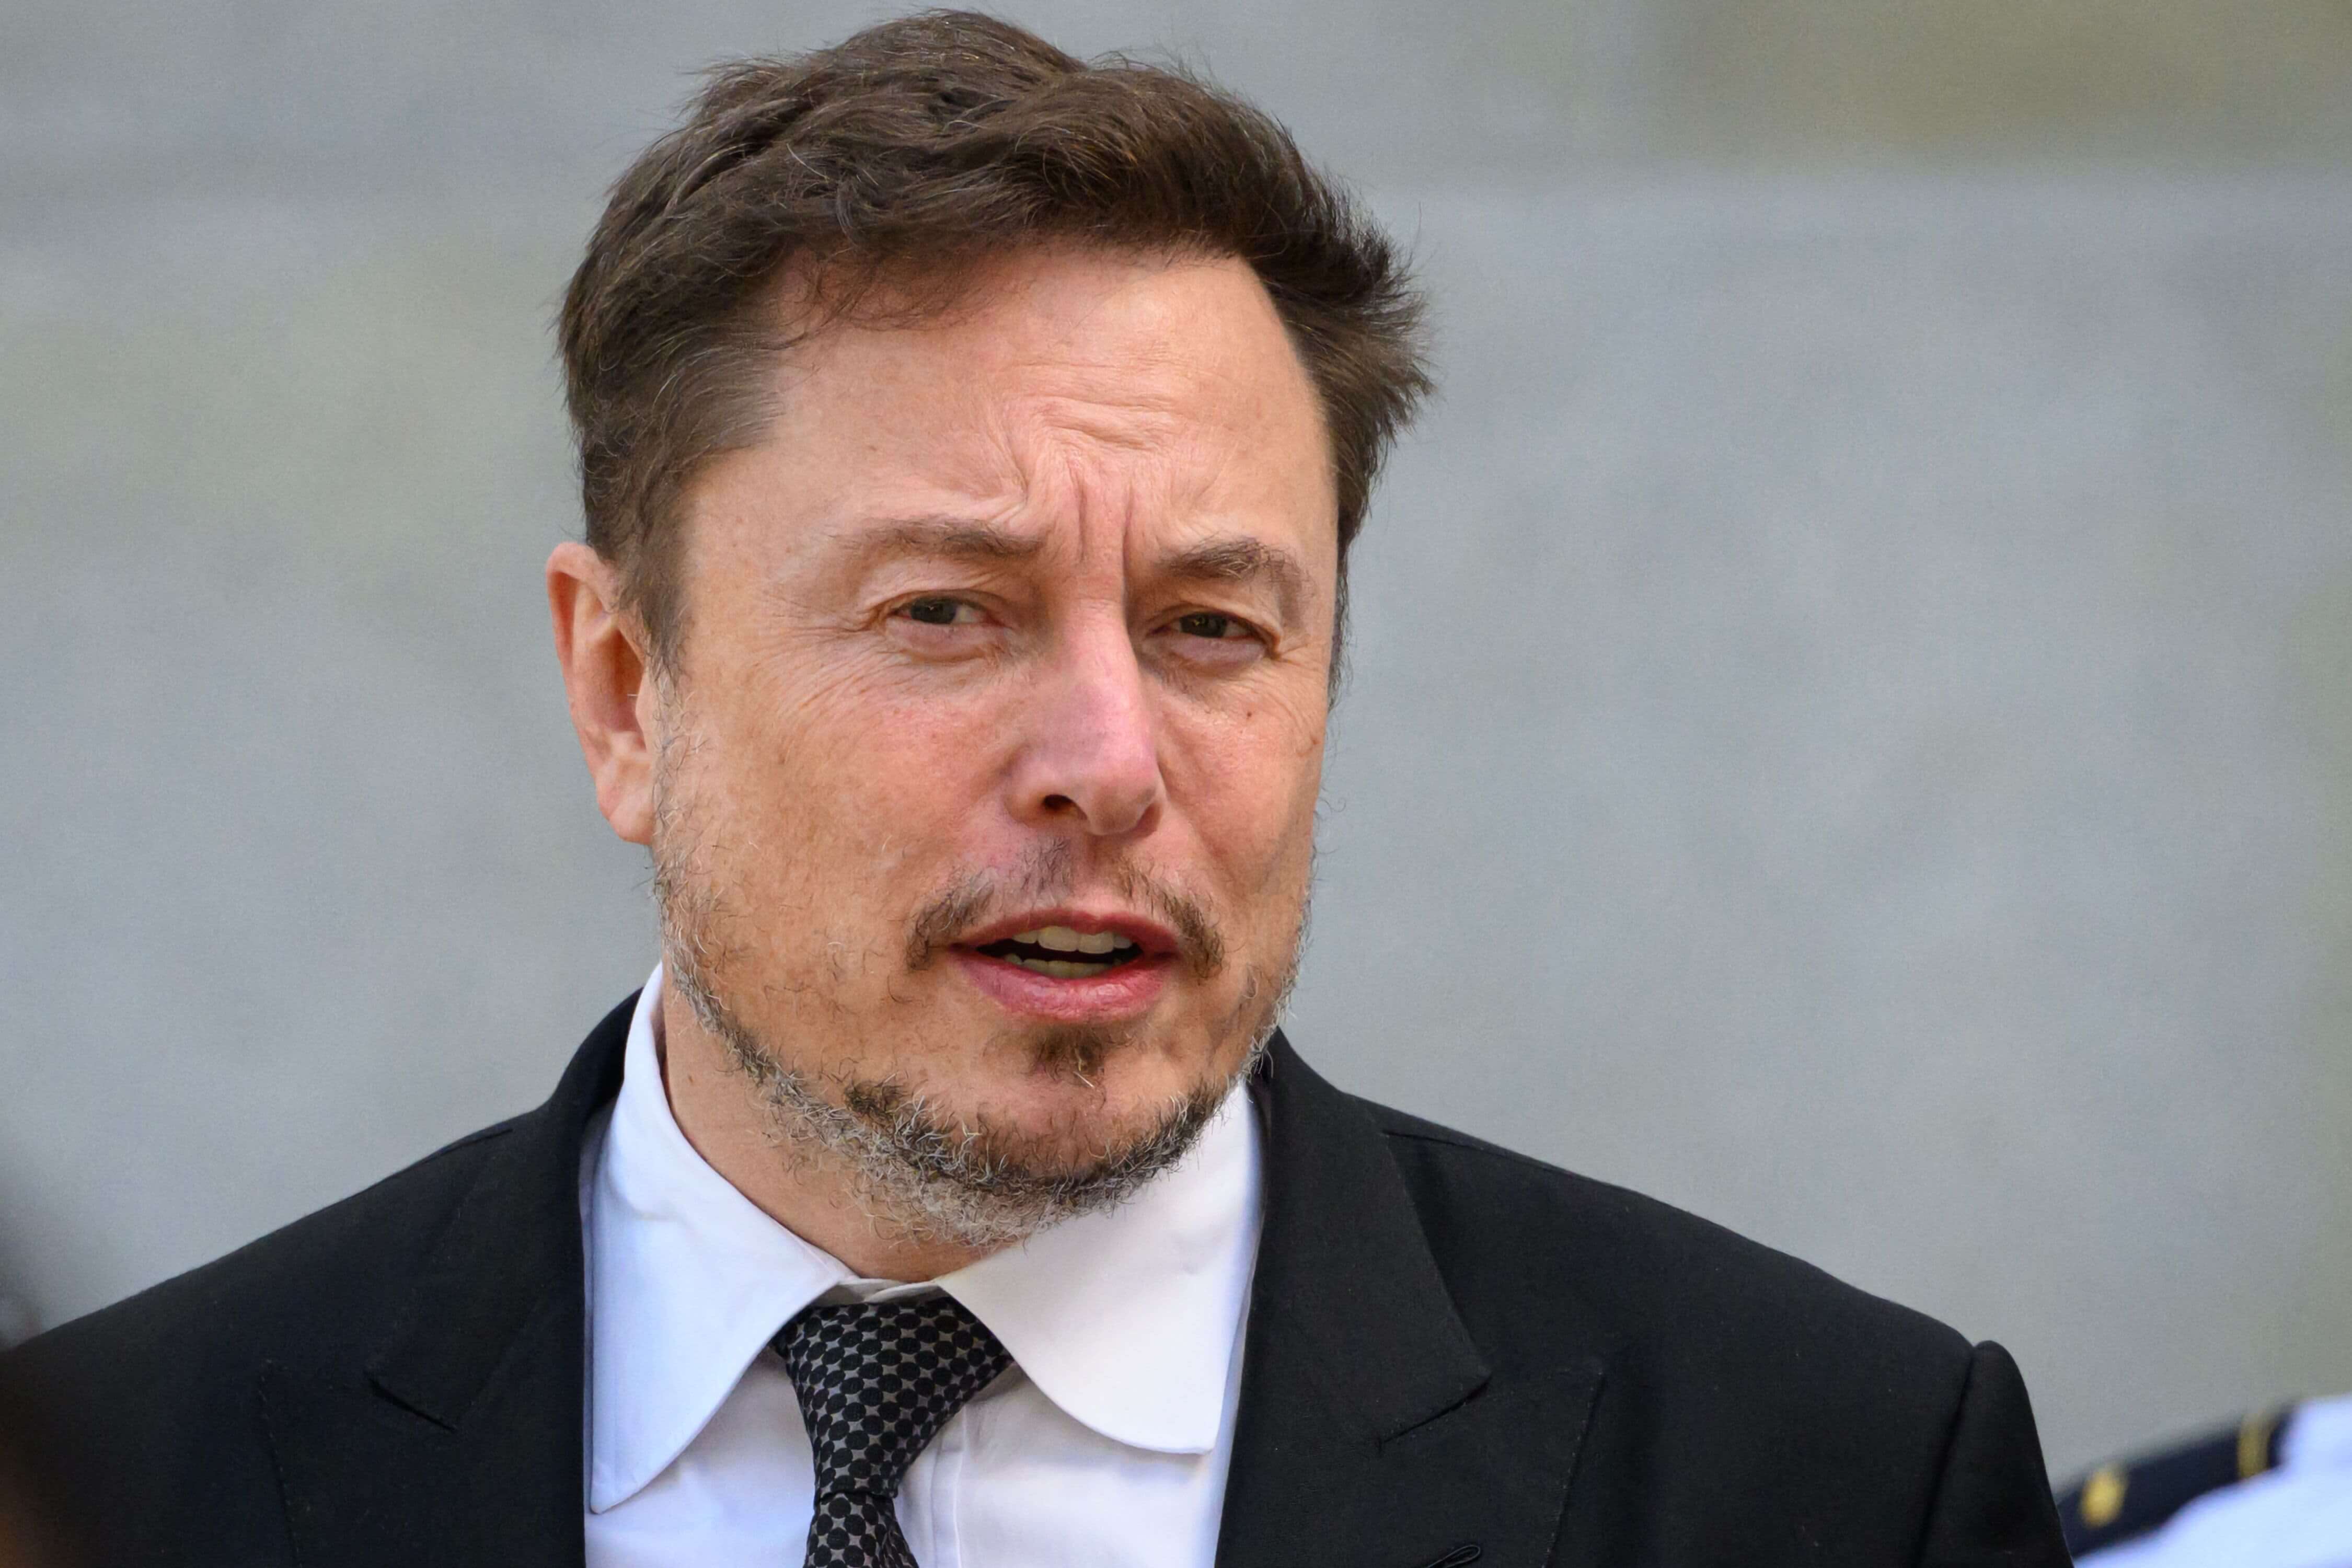 Elon Musk: xAI ilk Yapay Zekâ Modelini Yarın Piyasaya Sürecek